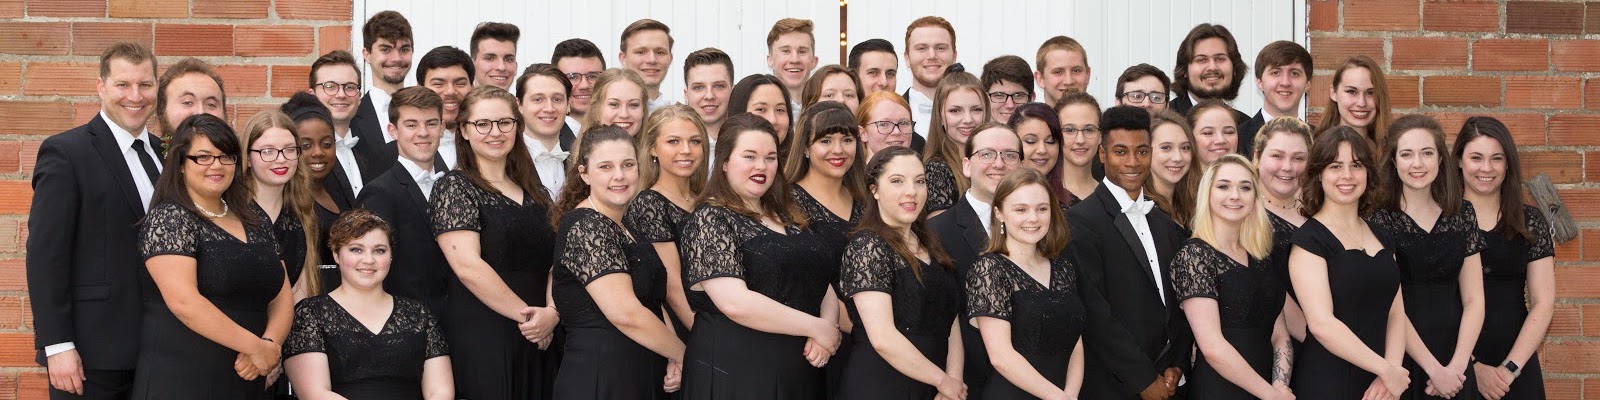 Collegiate Choir at Gala